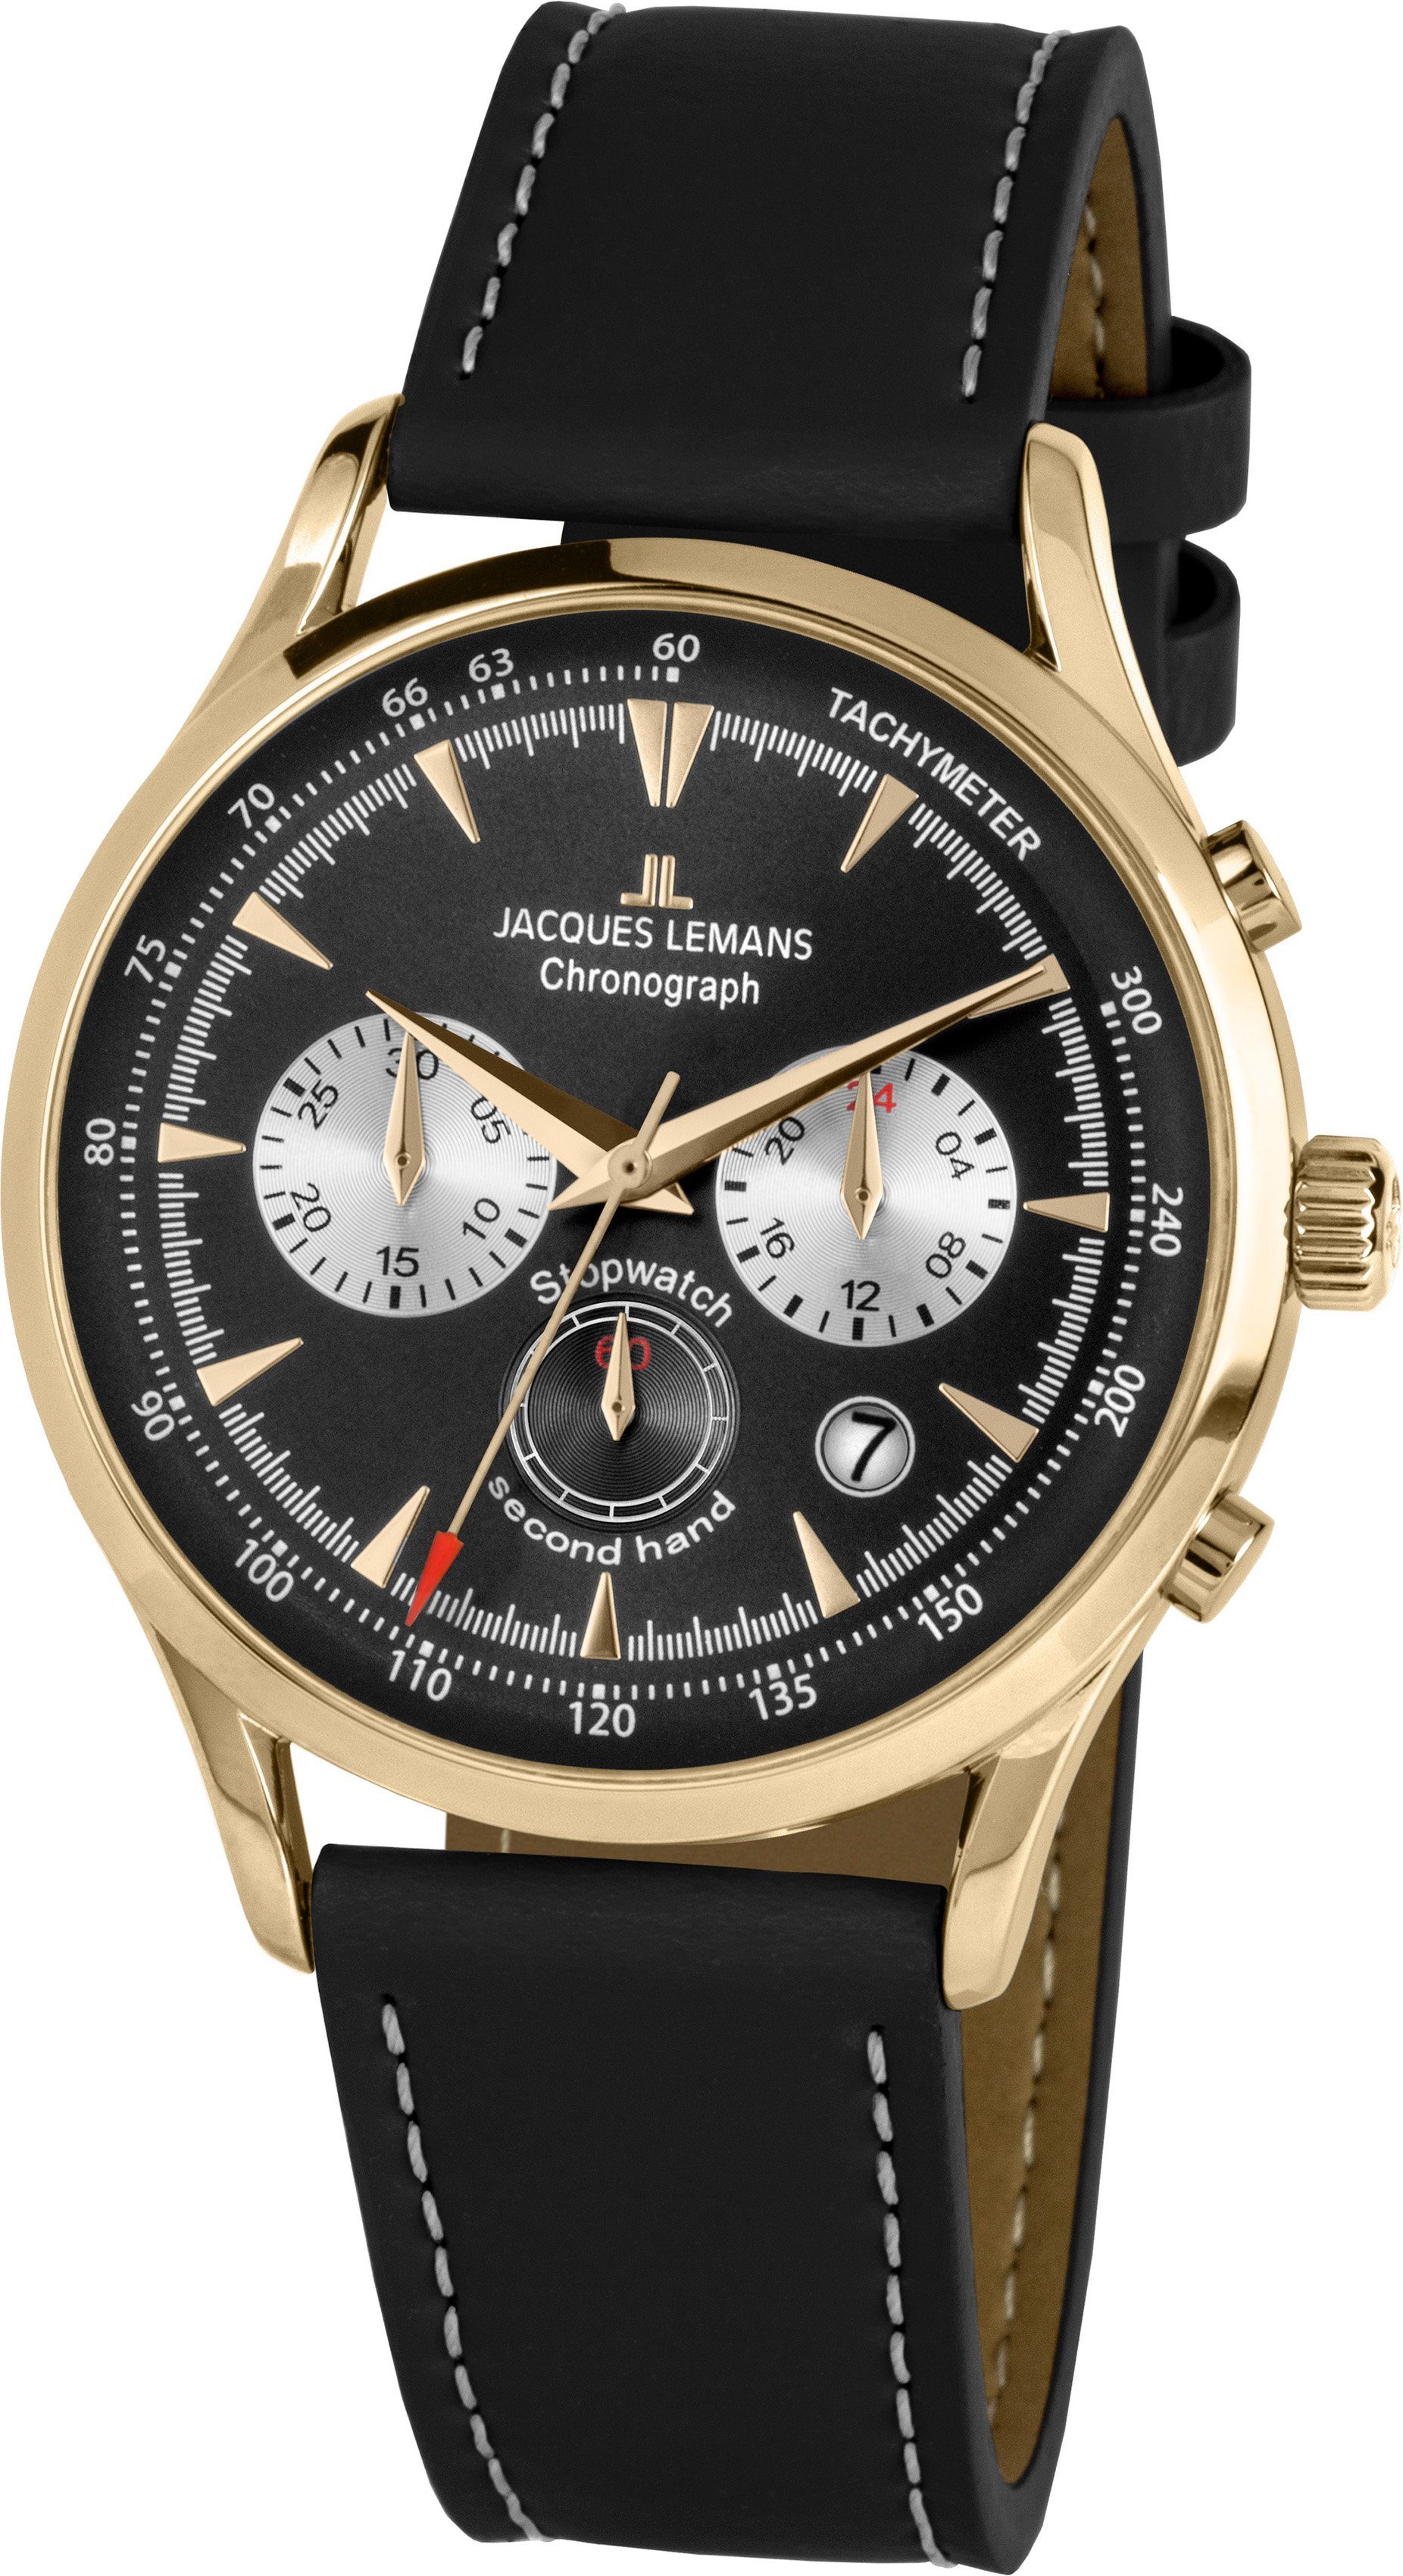 Jacques Lemans Chronograph Retro Classic, 1-2068I, Quarzuhr, Armbanduhr, Herrenuhr, Datum, Stoppfunktion